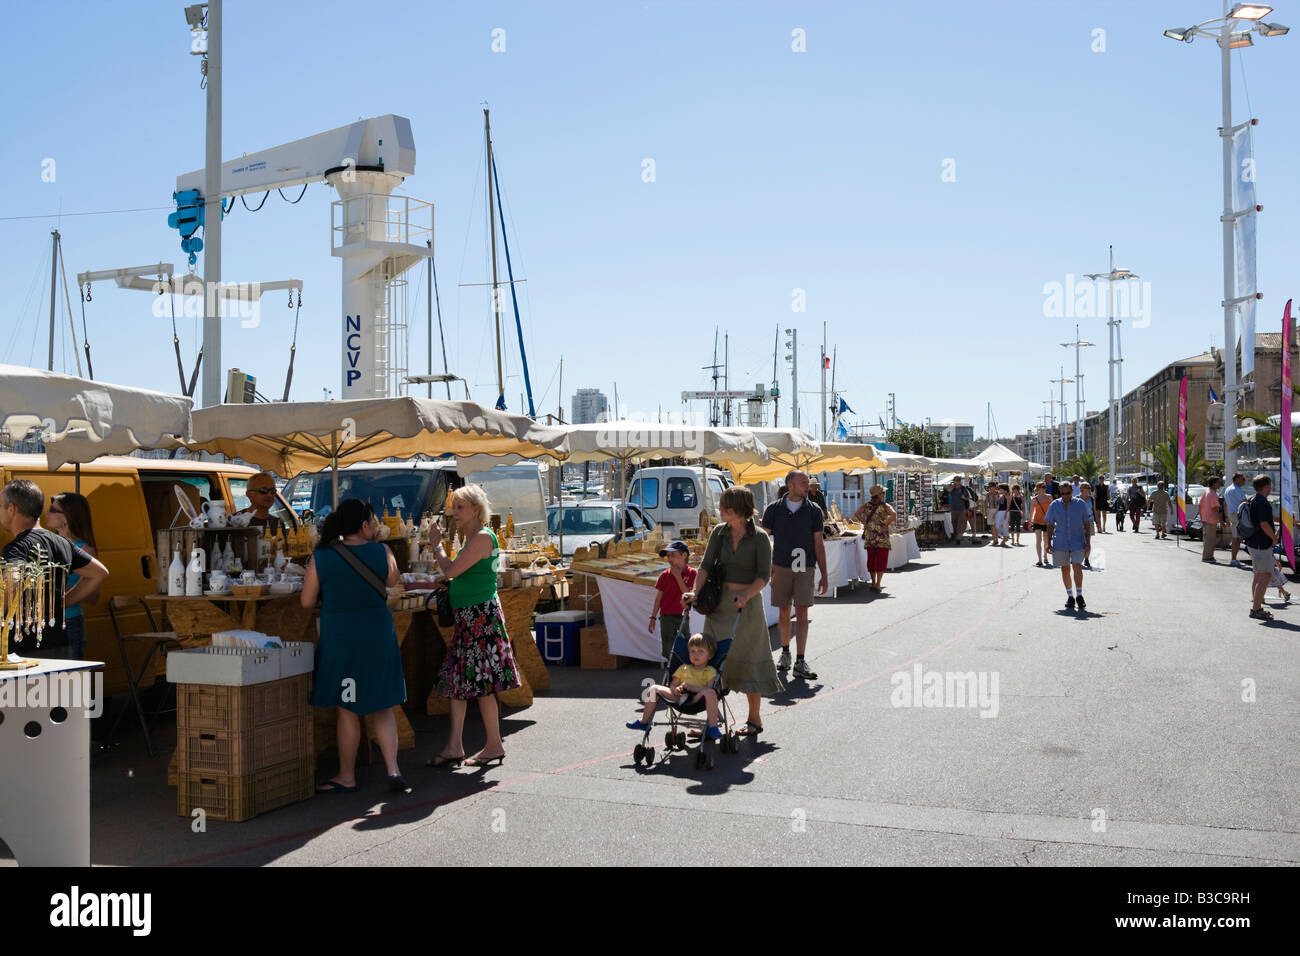 Market stalls on the quayside in the Vieux Port, Quai du Port, Marseille, Cote d Azur, France Stock Photo